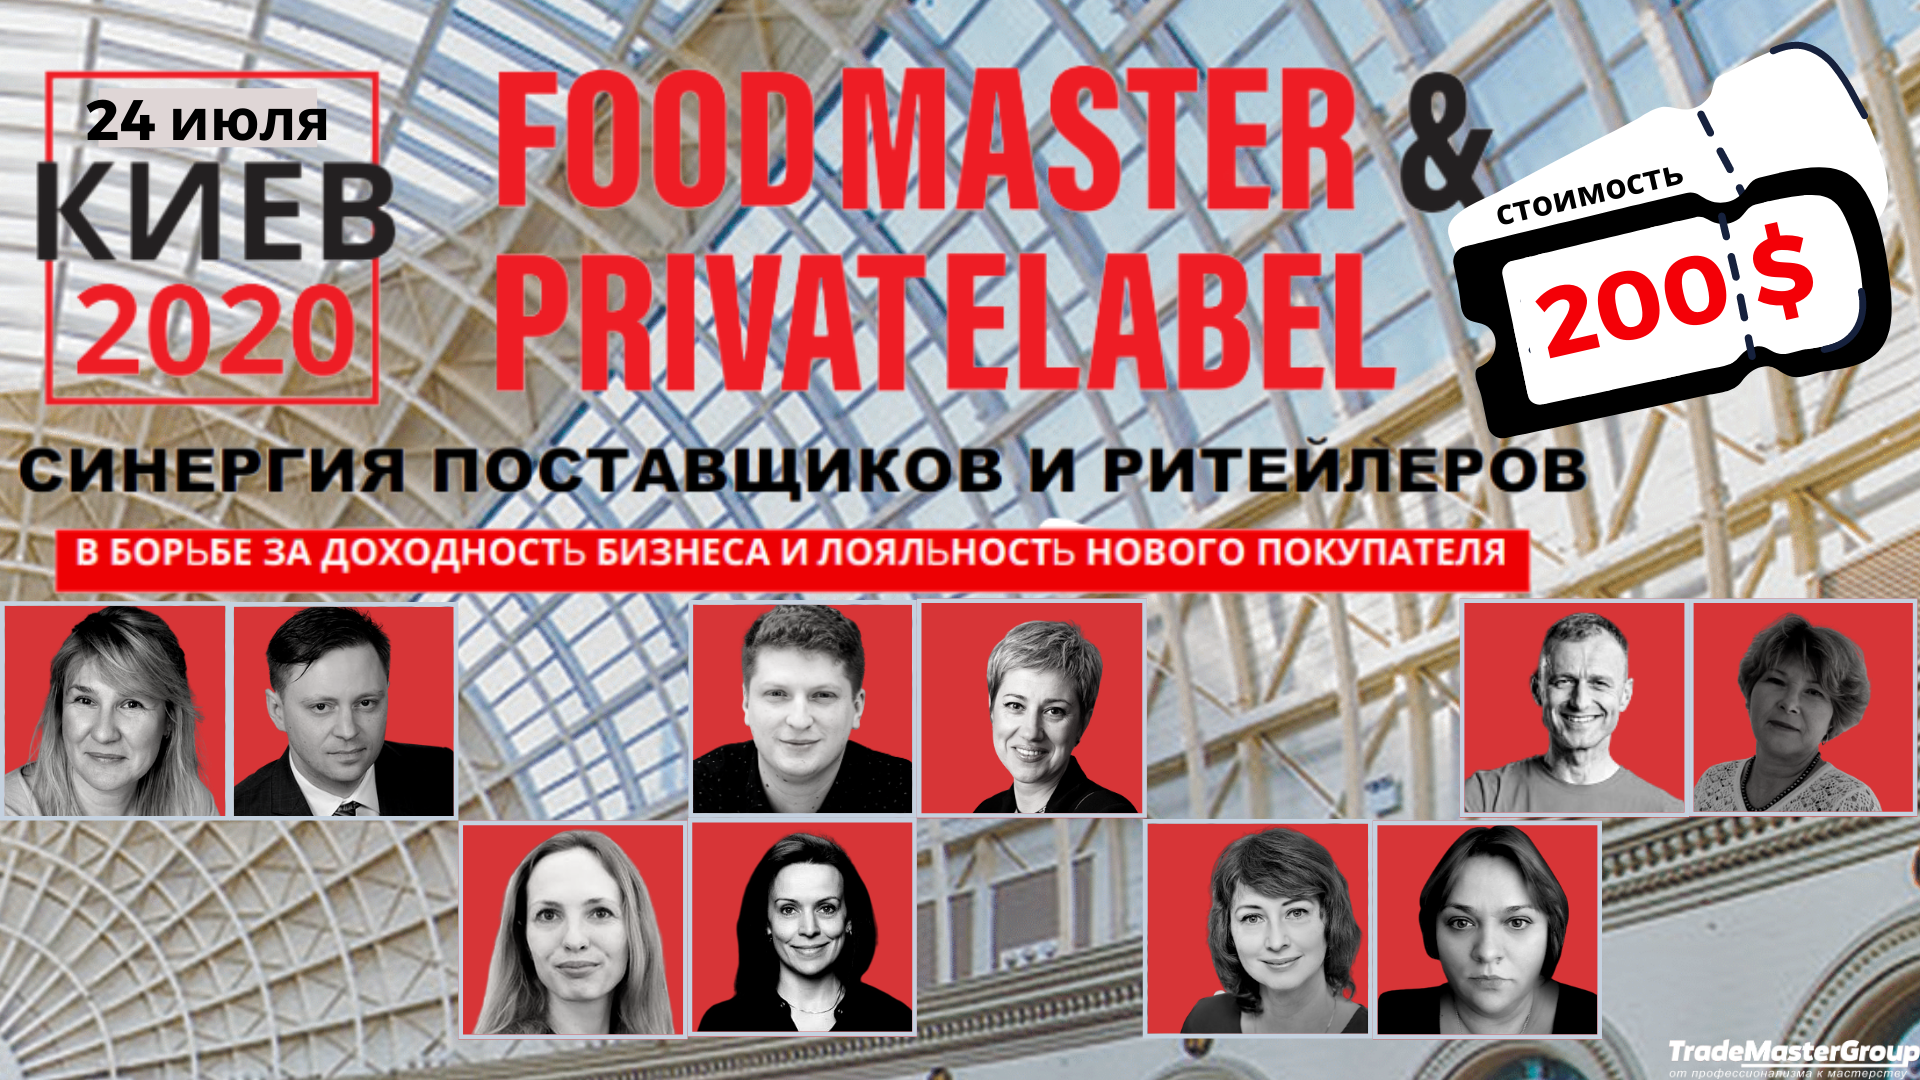 FoodMaster&PrivateLabel-2020:11-я Международная бизнес-встреча для развития сотрудничества ритейлера и поставщика